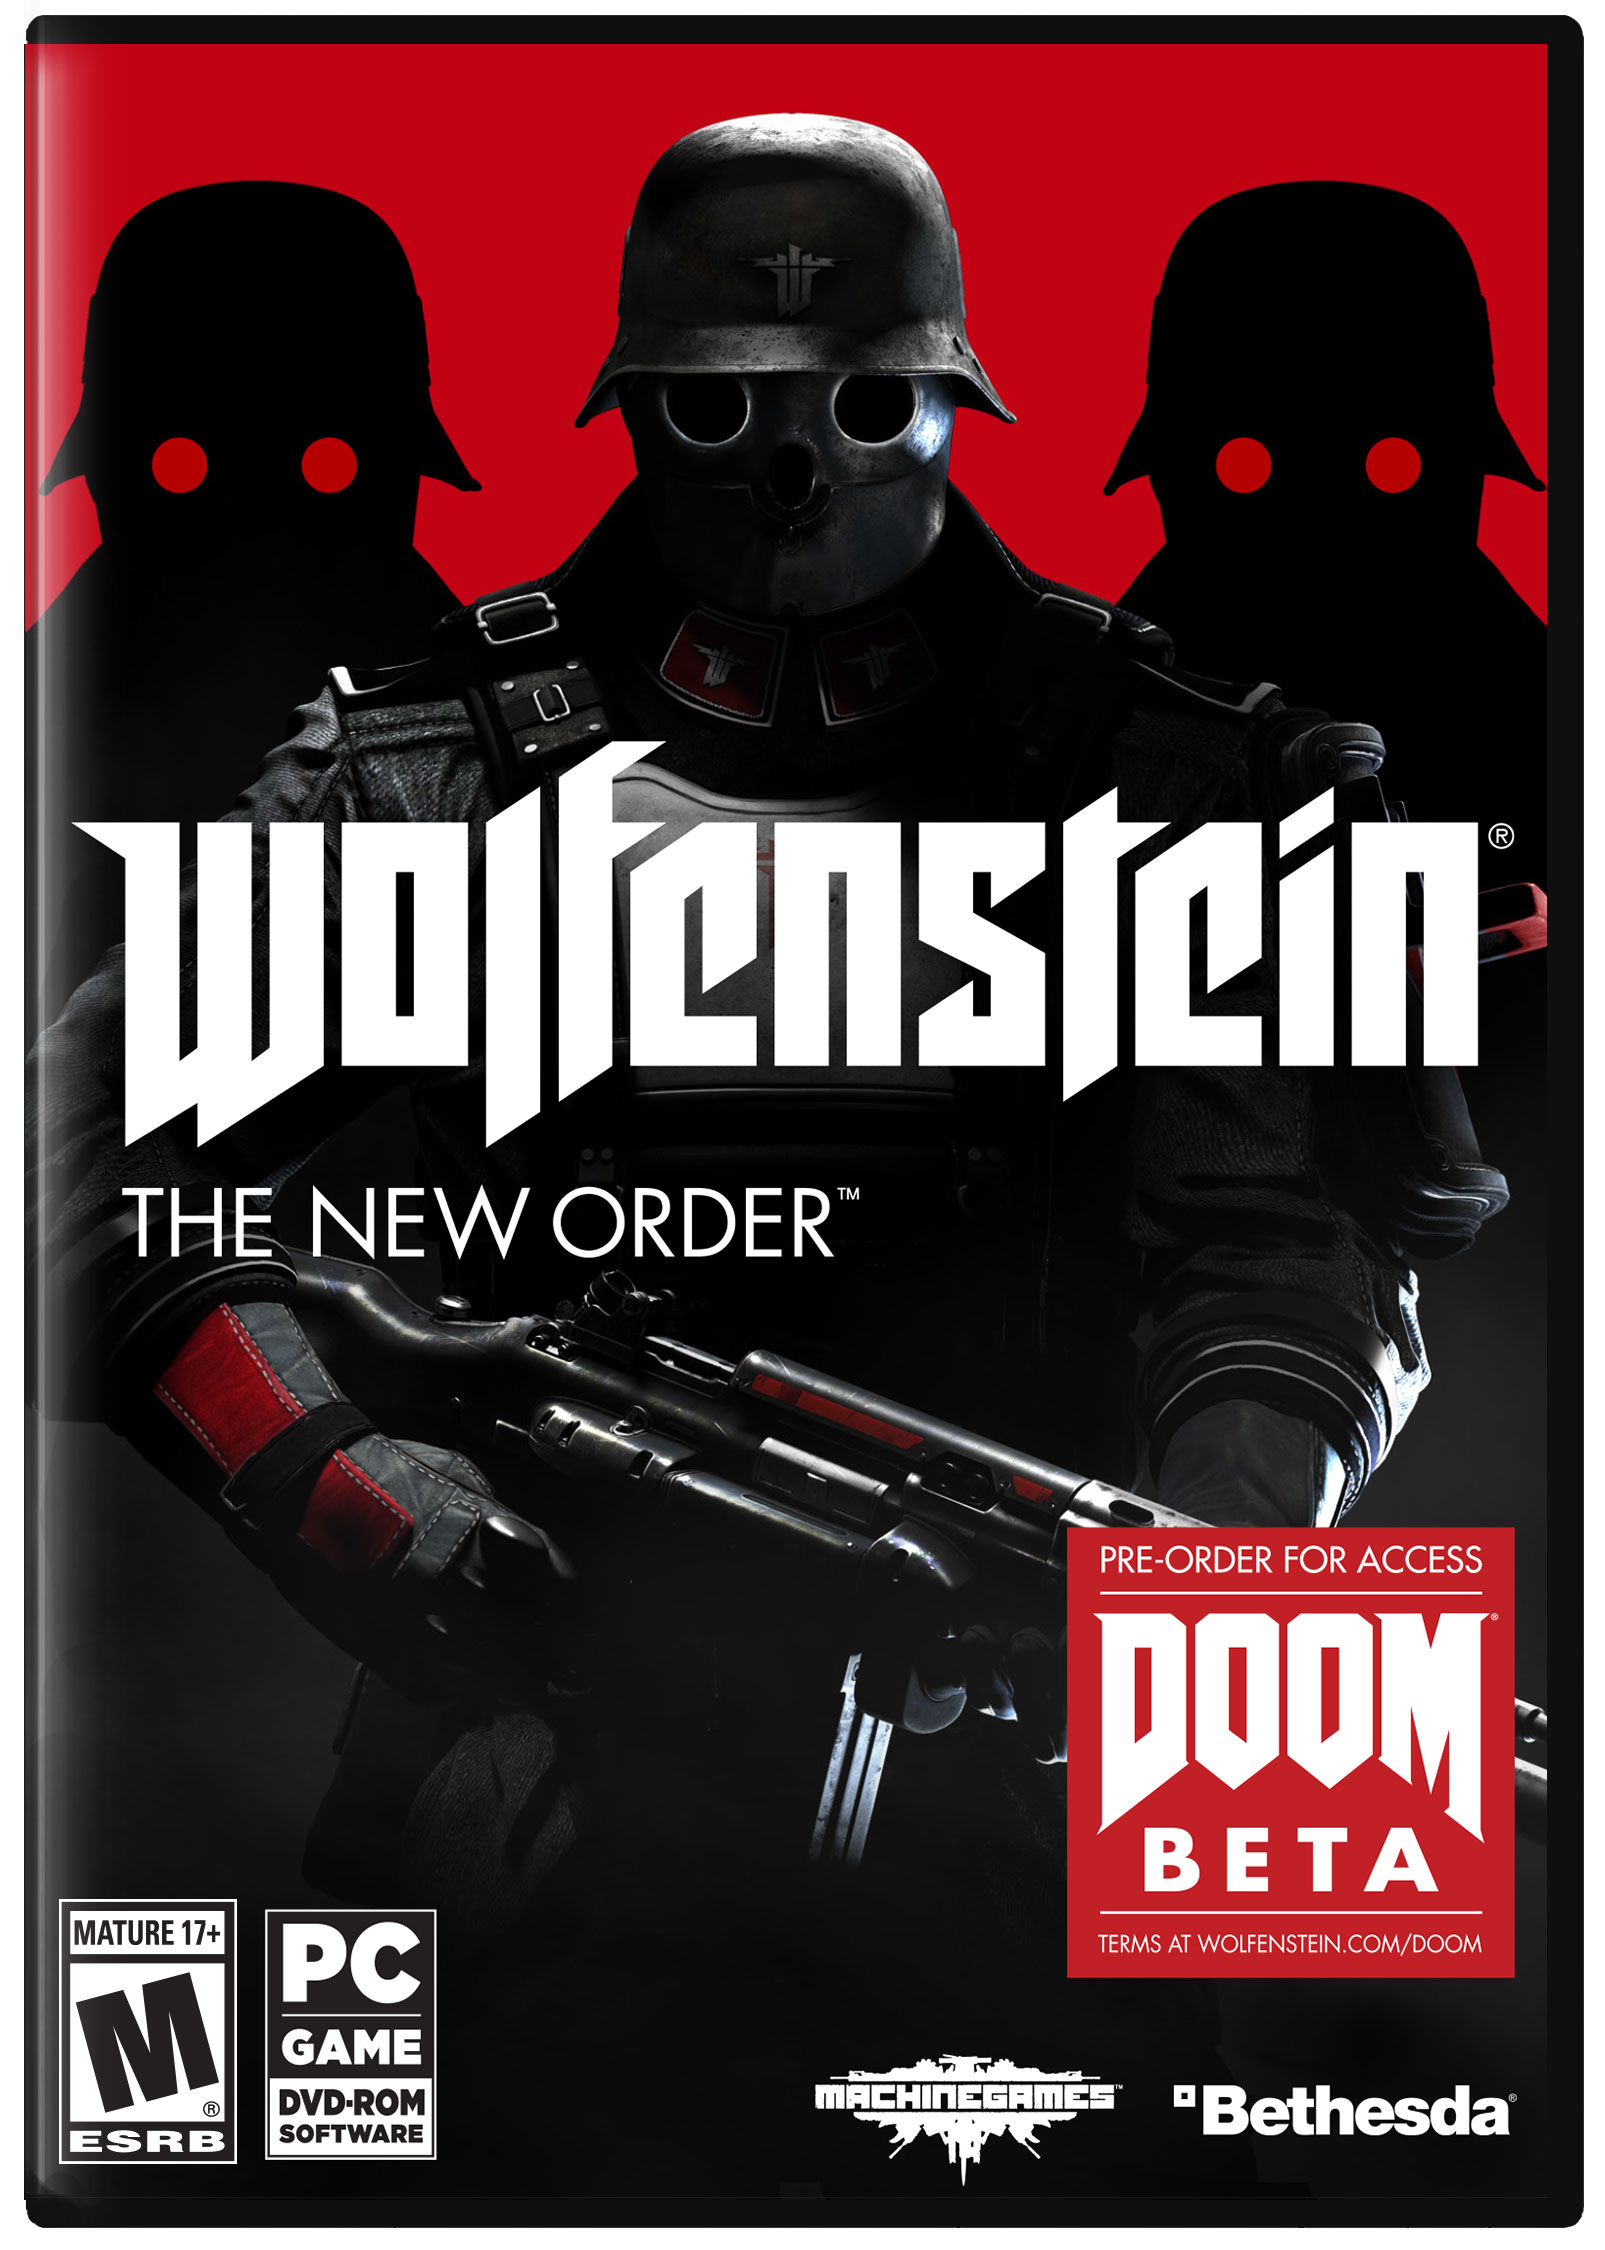 Usado: Jogo Wolfenstein: The New Order - Xbox 360 em Promoção na